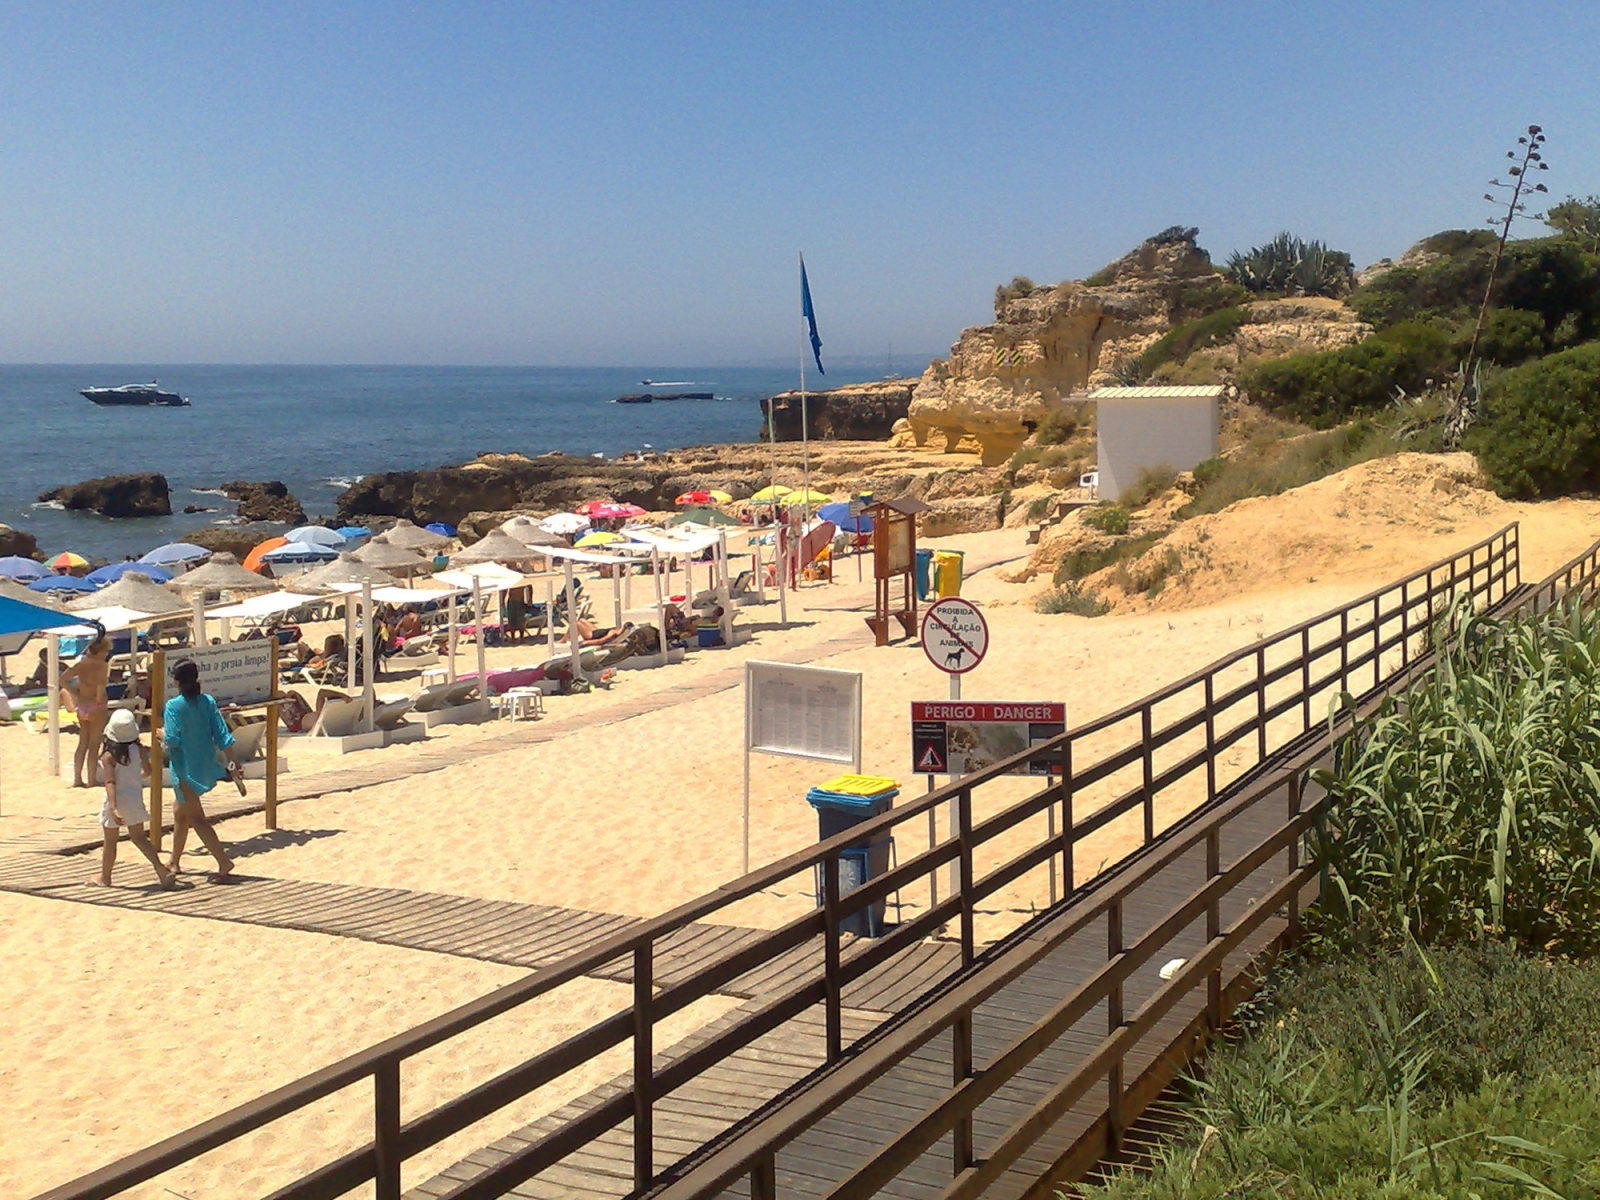 Praia do Evaristo - Gallery - Algarve Portal